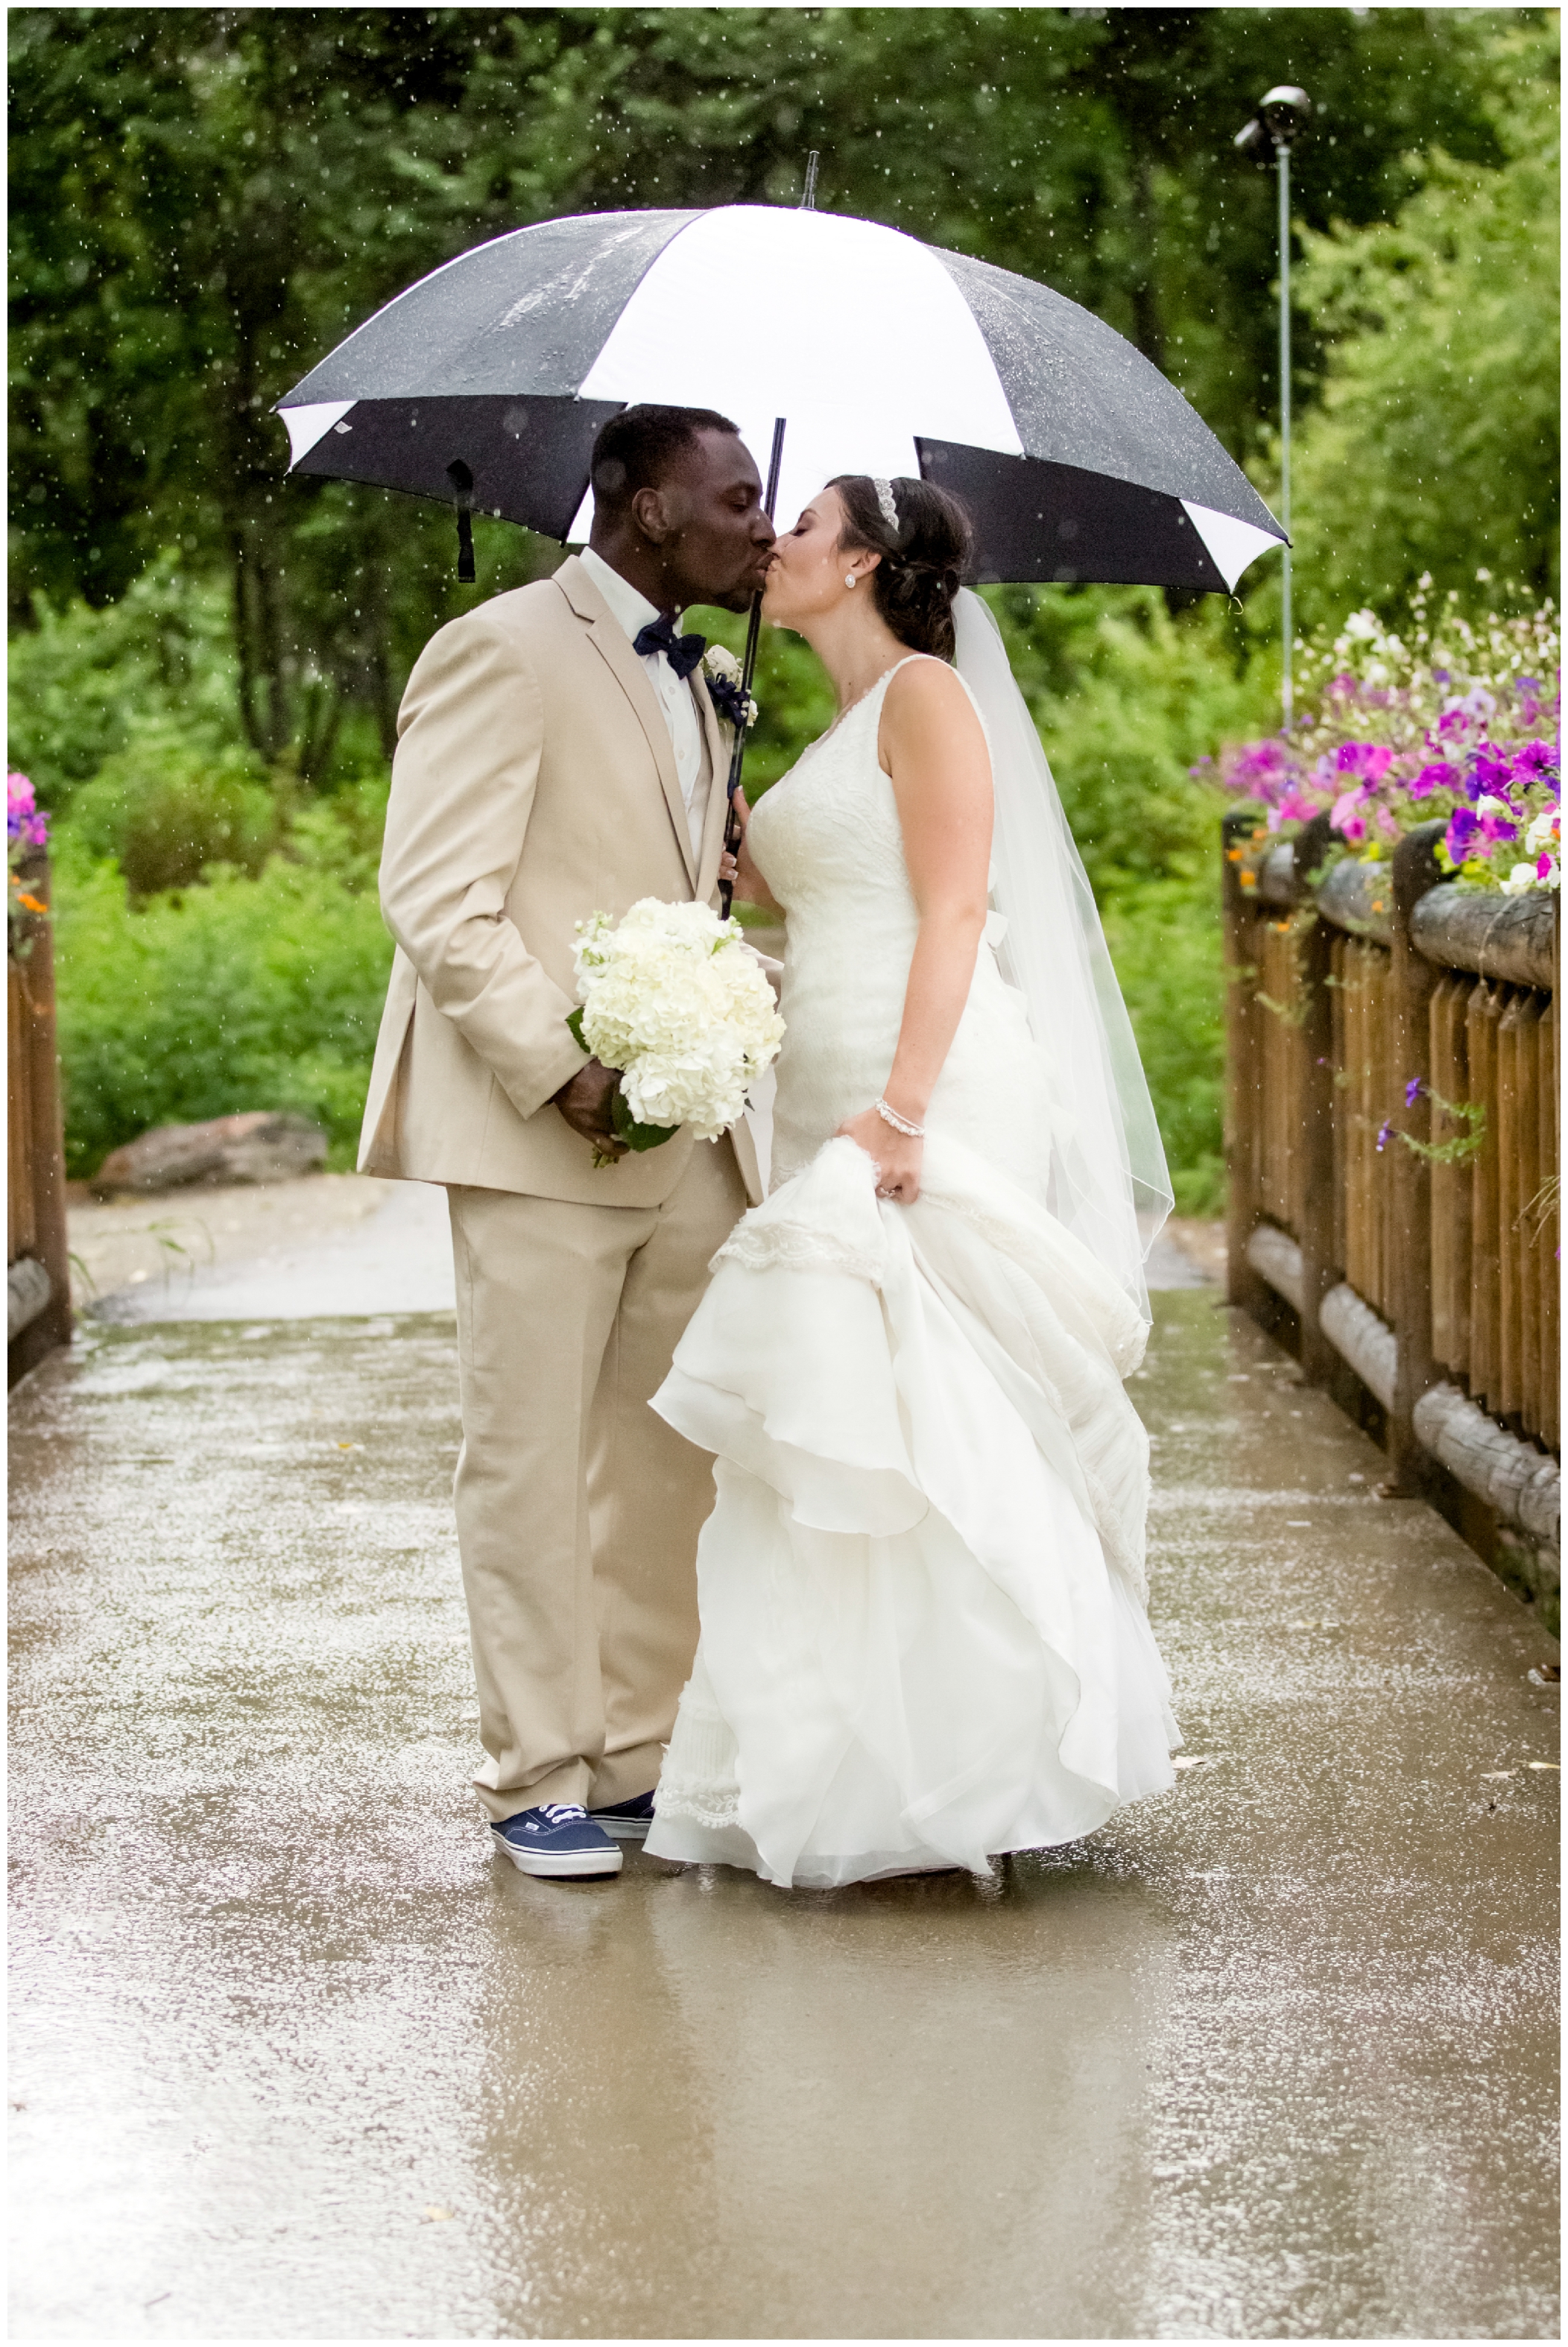 rainy wedding photo inspiration 